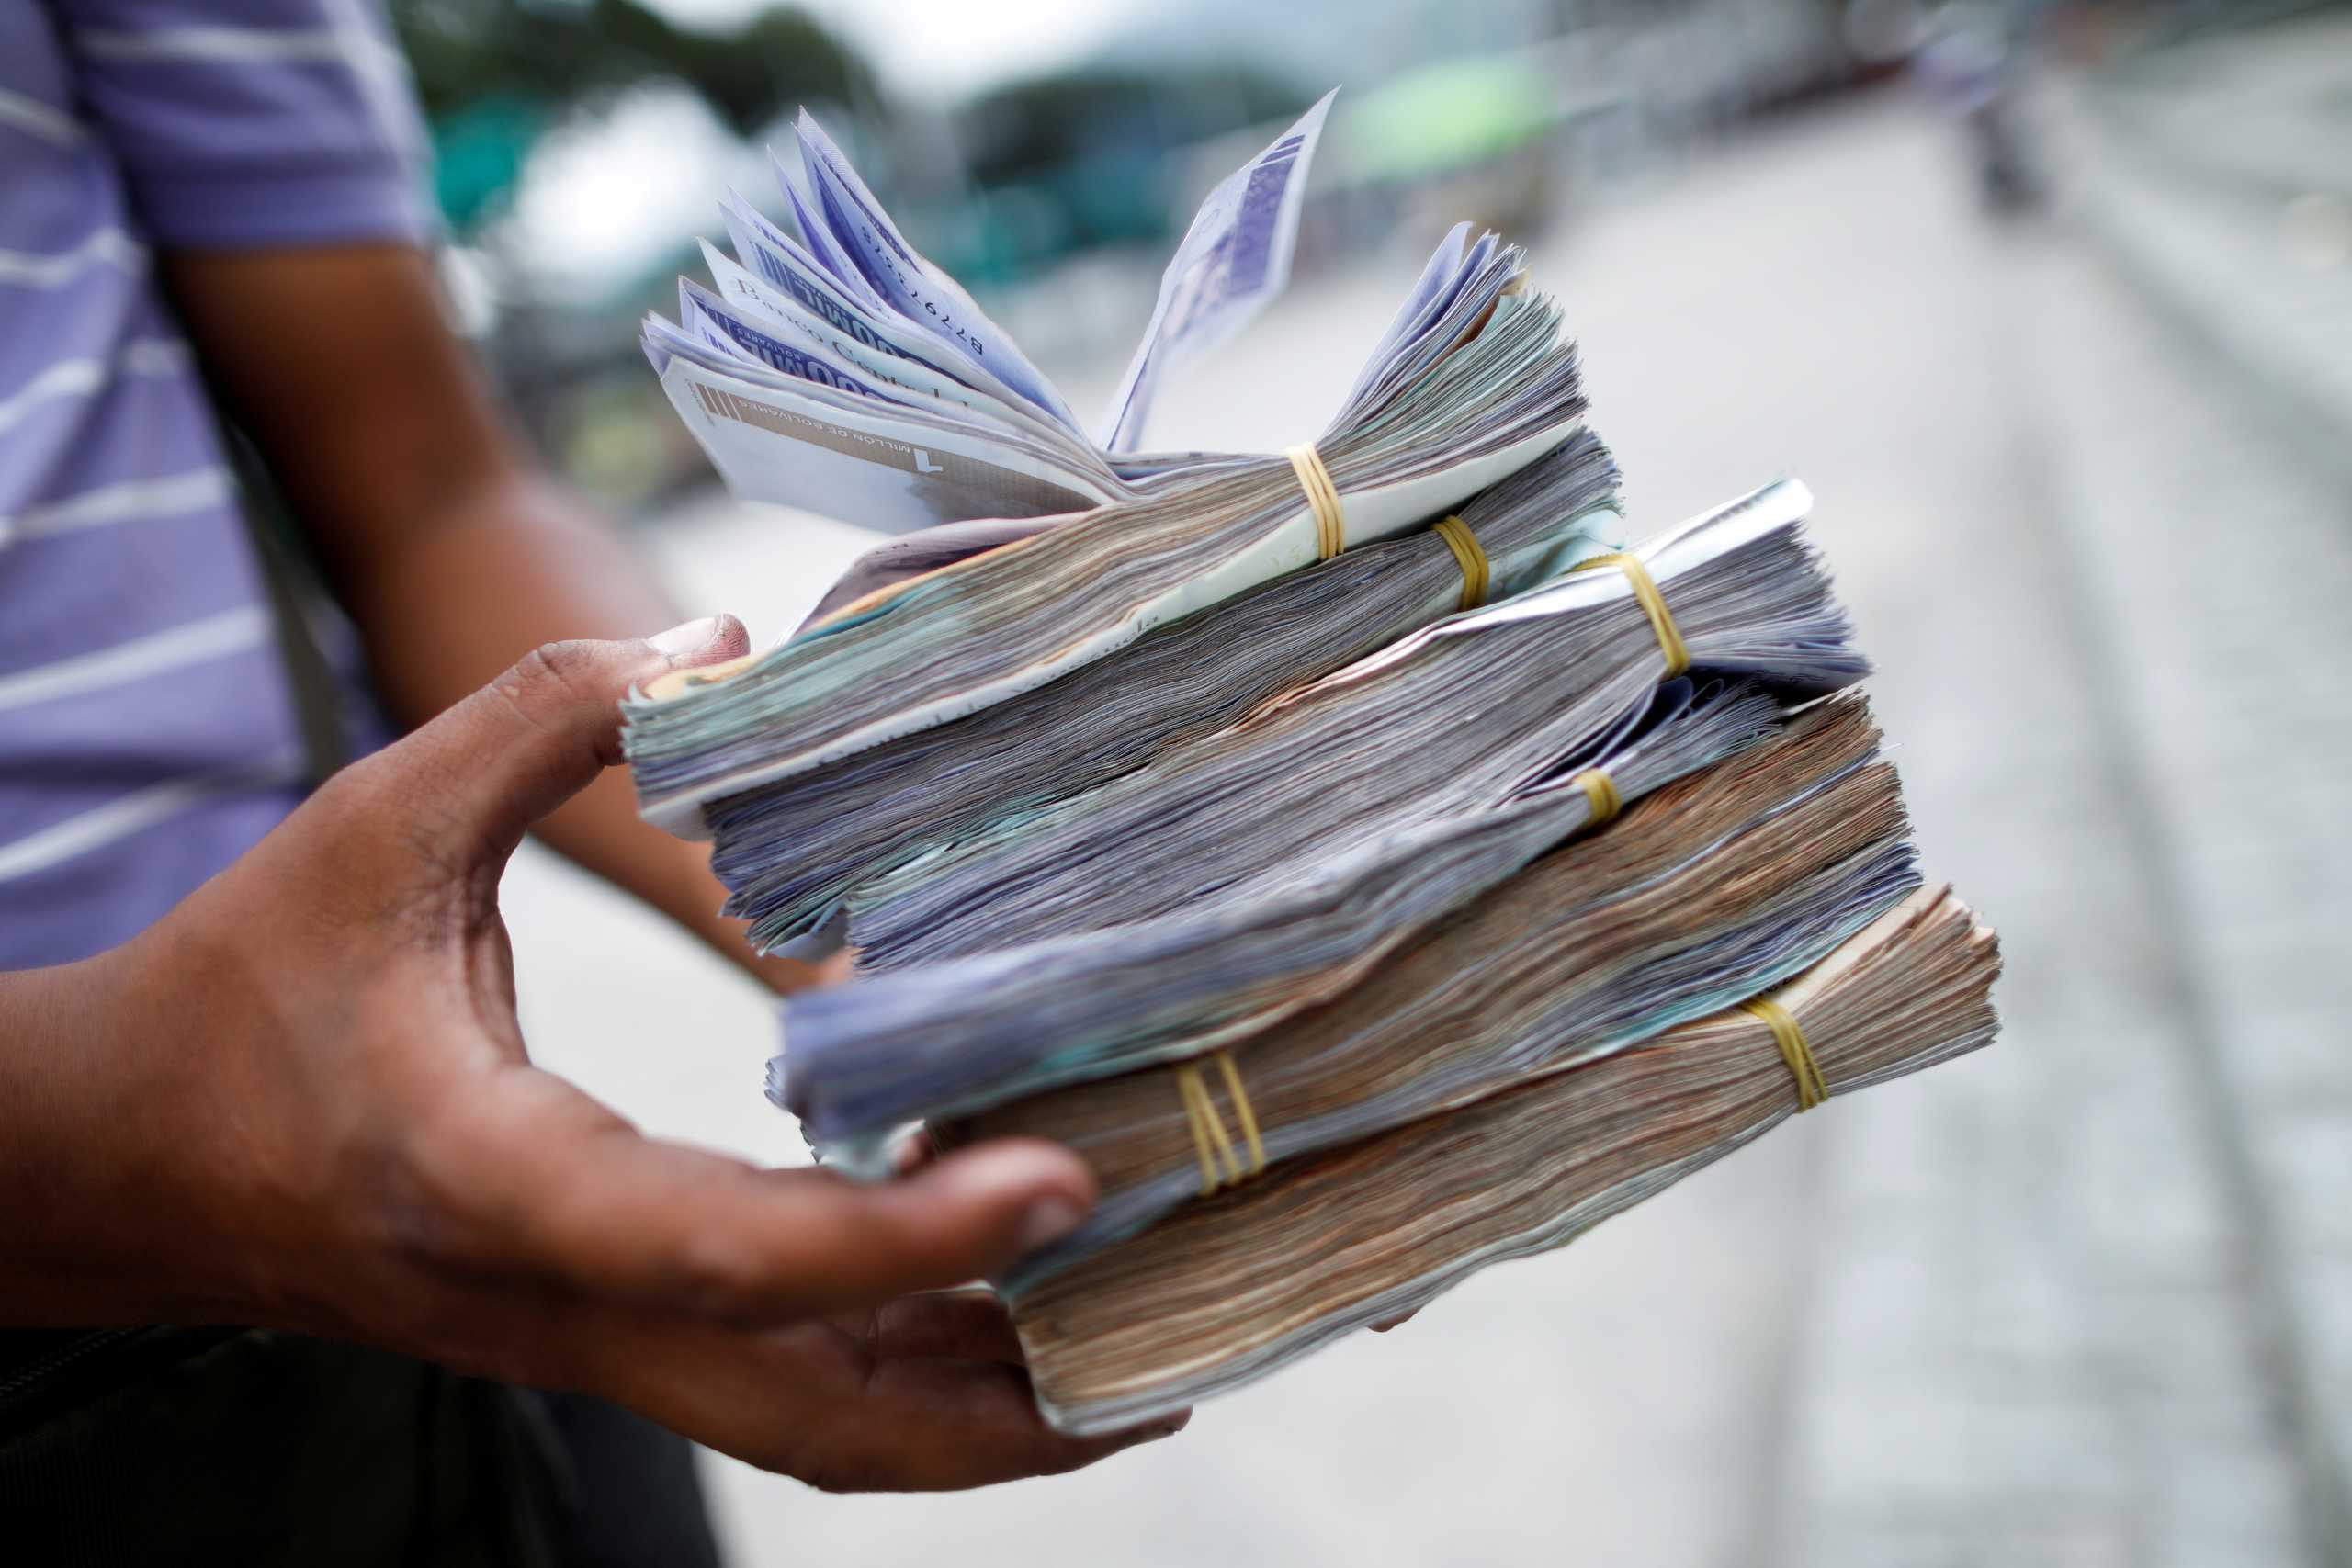 Παναμάς: Κατάσχεση ρεκόρ 10 εκατομμυρίων δολαρίων προερχόμενα από εμπόριο ναρκωτικών